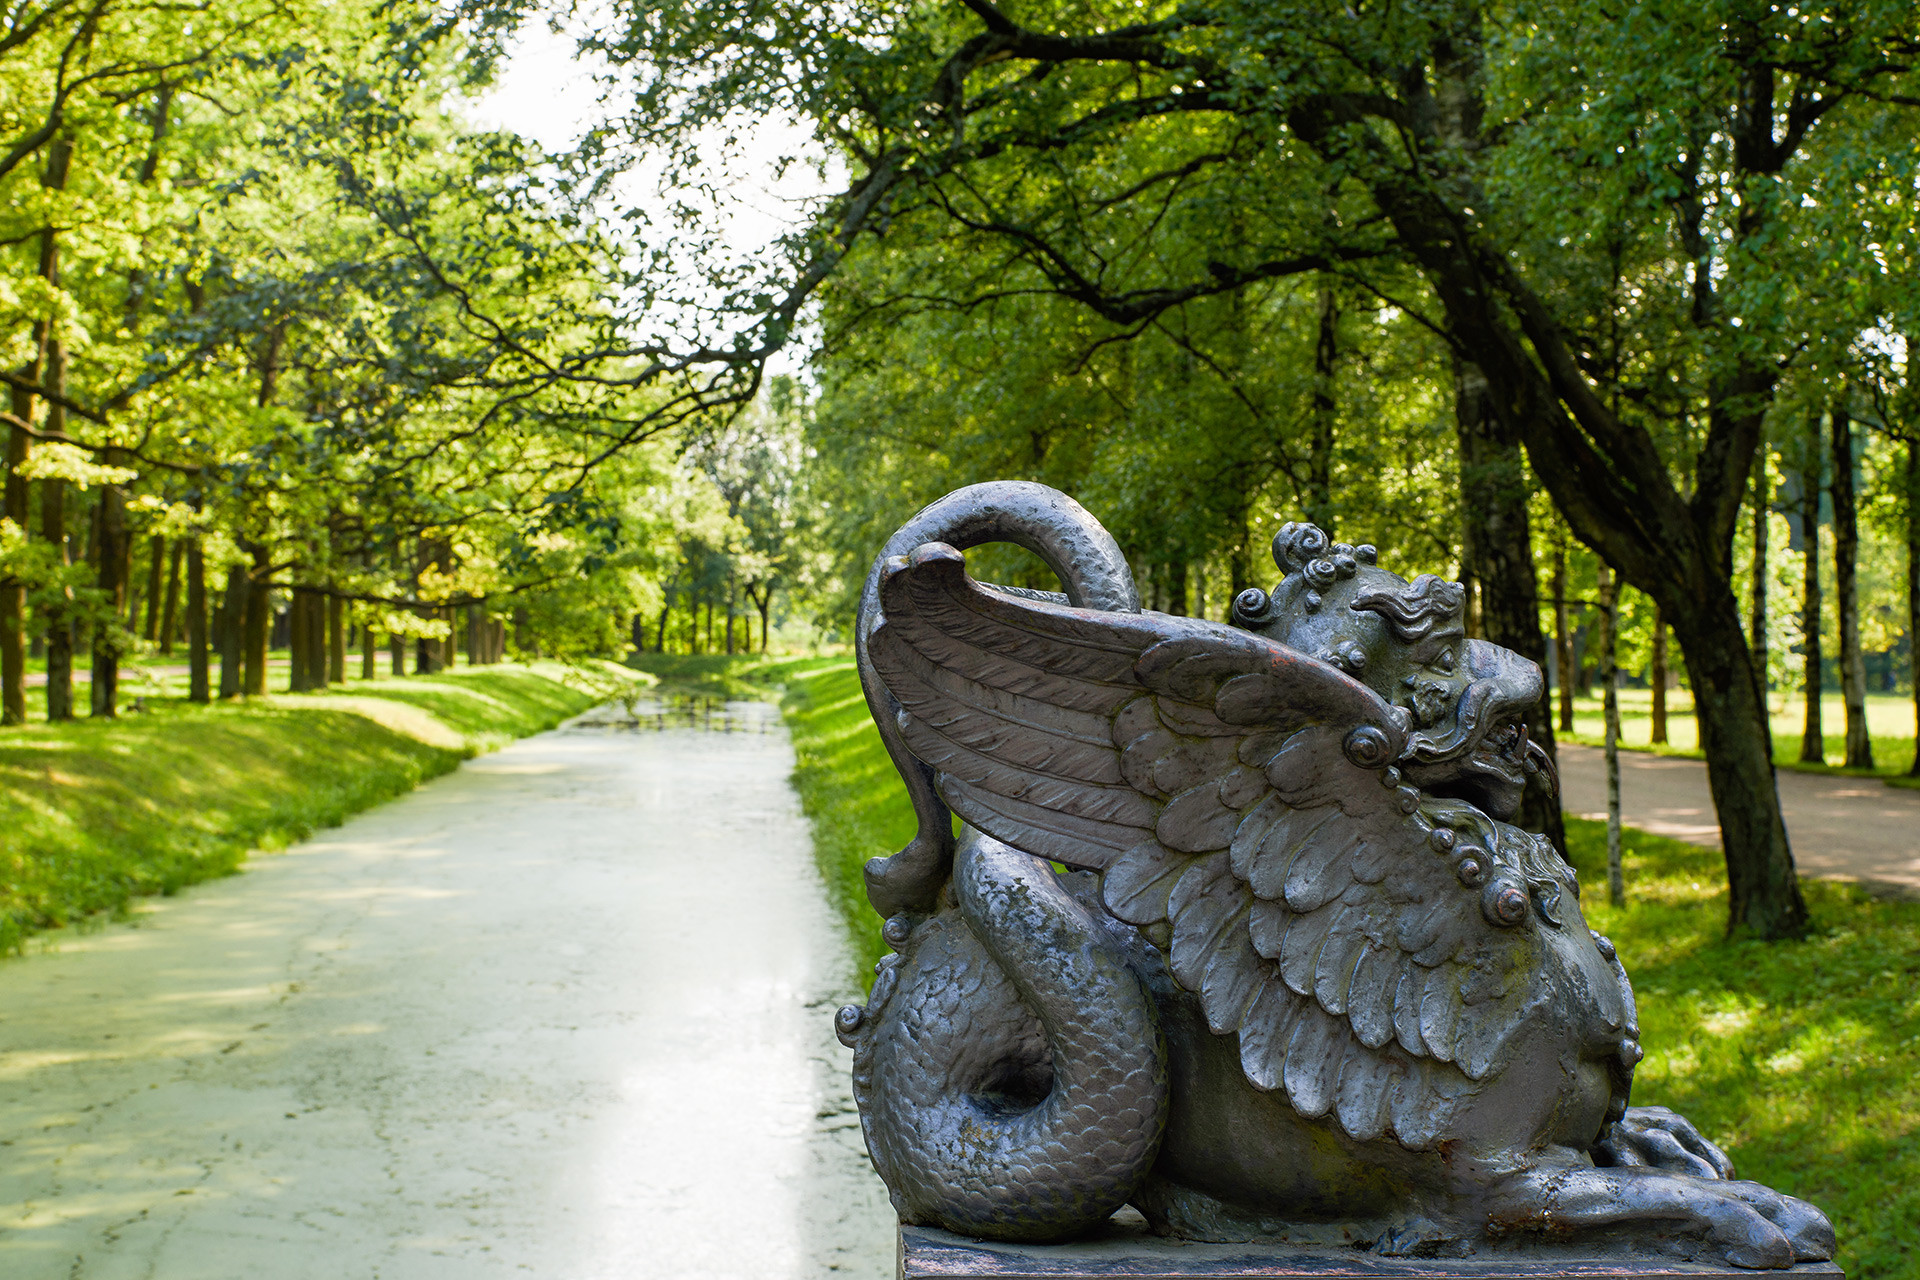 ドラゴン橋の彫刻。プーシキン市の野外博物館ツァールスコエ・セローにあるアレクサンドロフスキー公園。